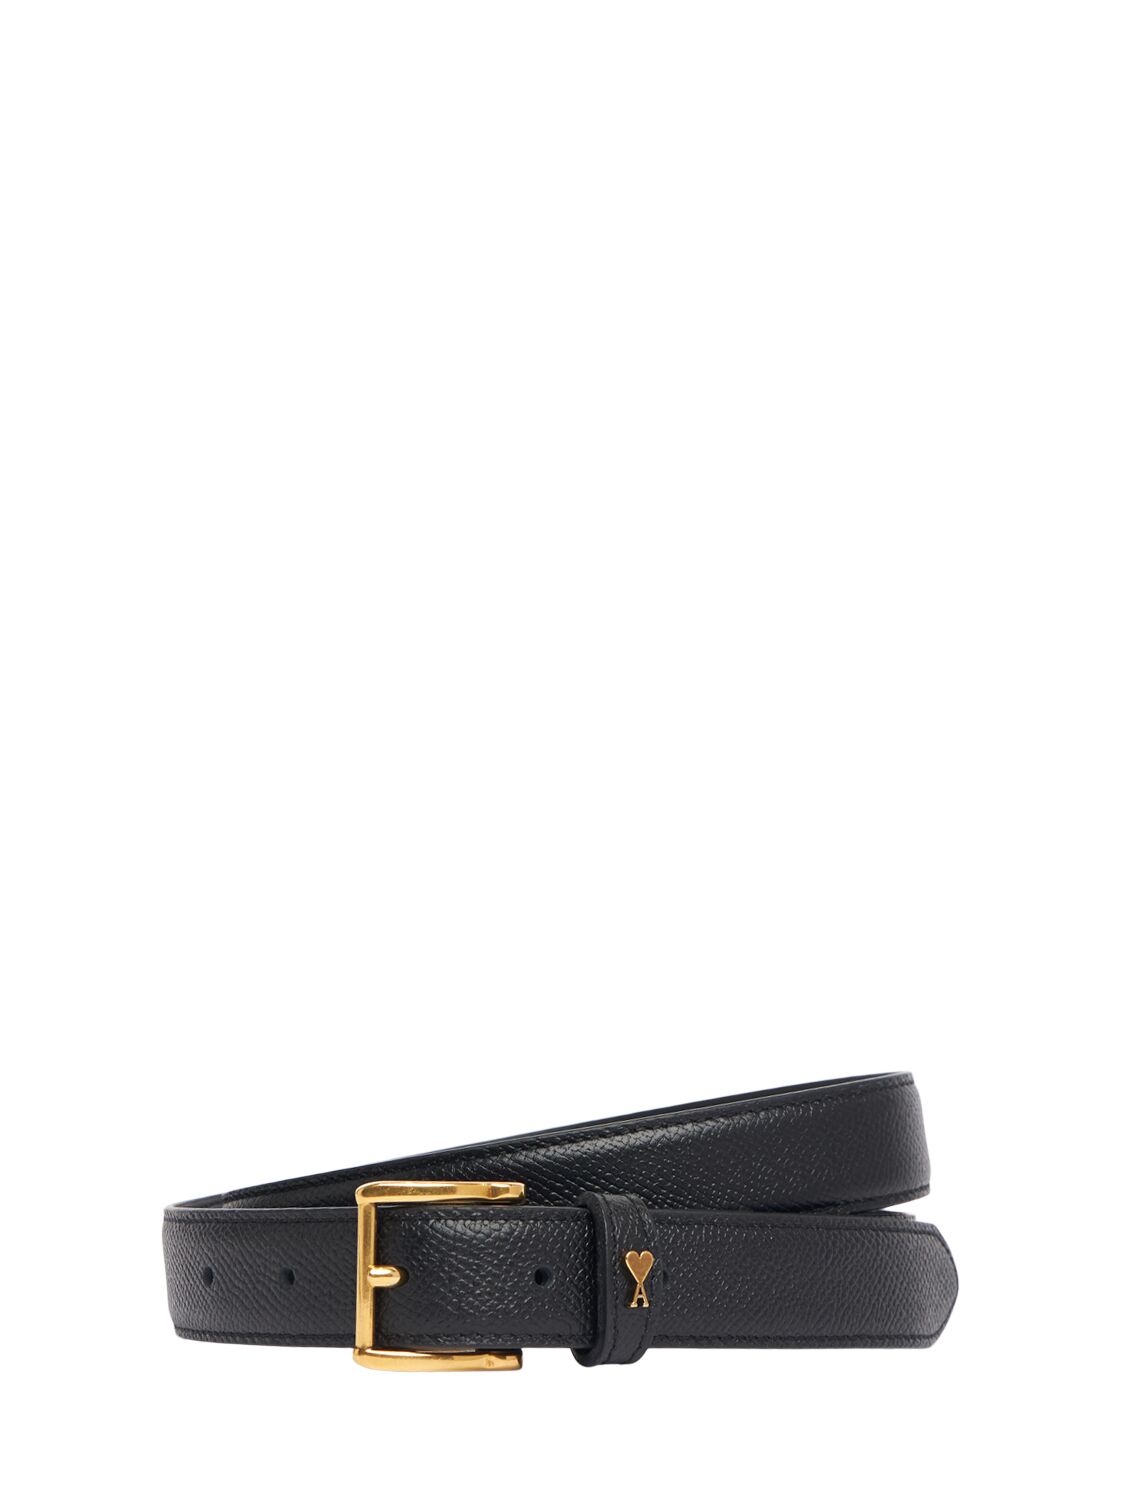 Ami Alexandre Mattiussi 2.5cm Paris Paris Belt In Black/brass